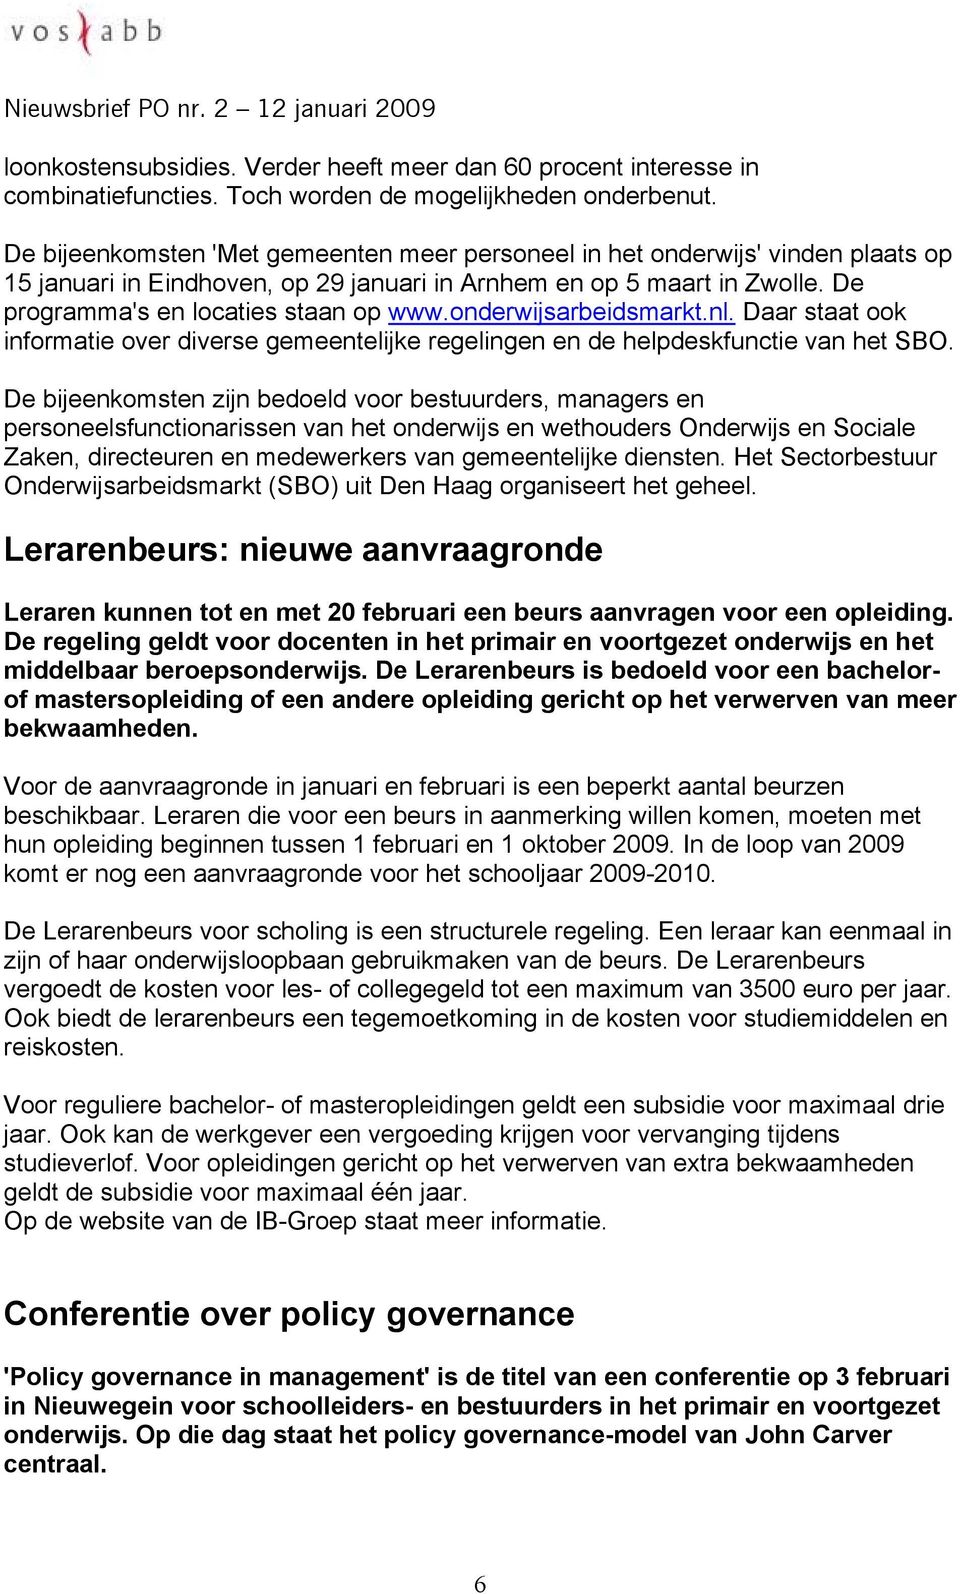 onderwijsarbeidsmarkt.nl. Daar staat ook informatie over diverse gemeentelijke regelingen en de helpdeskfunctie van het SBO.